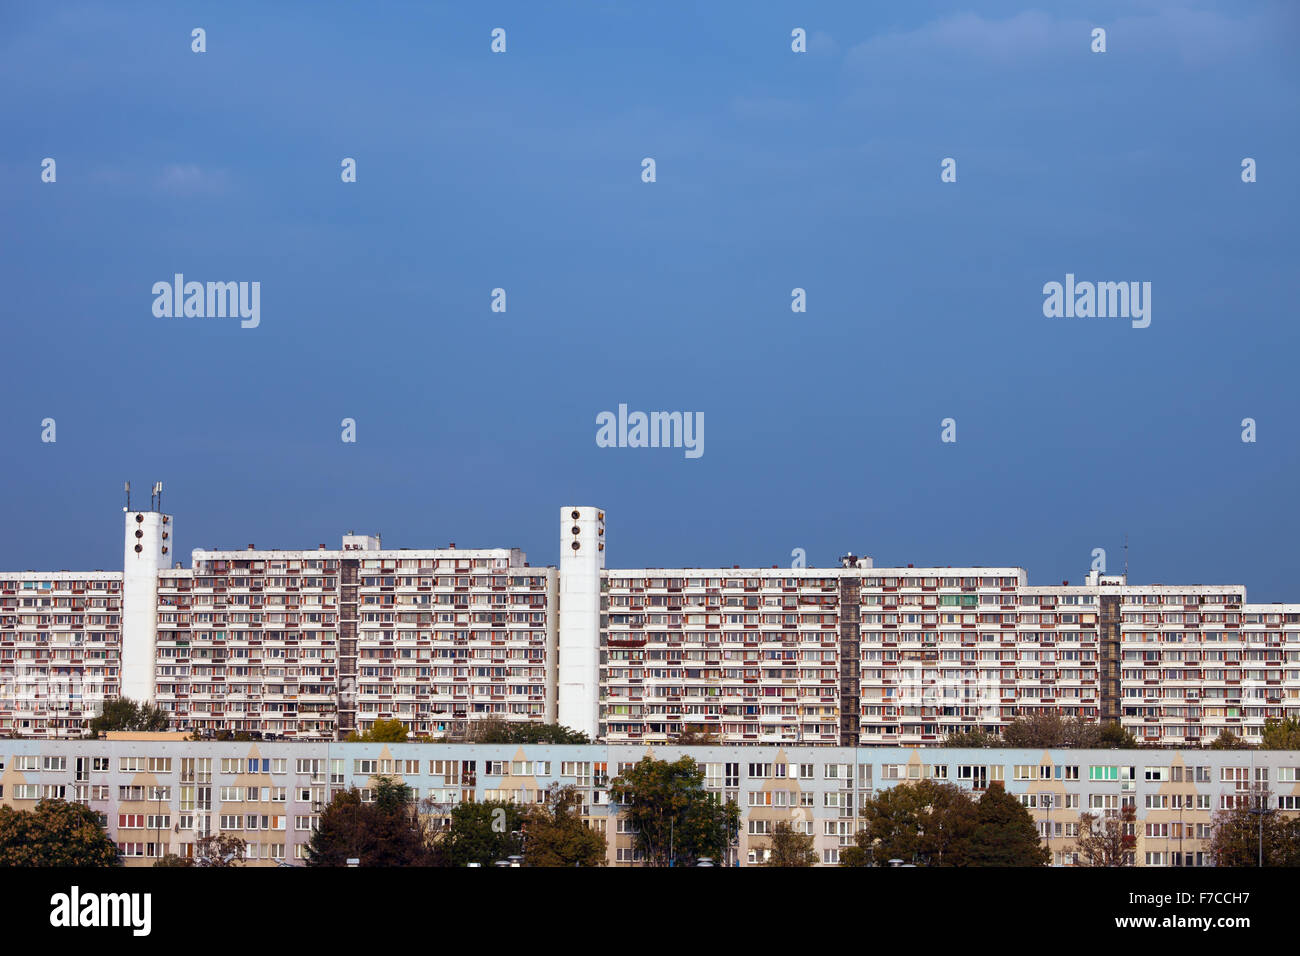 La ciudad de Wroclaw, Polonia, grandes bloques de viviendas, grandes edificios de apartamentos, condominios, arquitectura residencial. Foto de stock